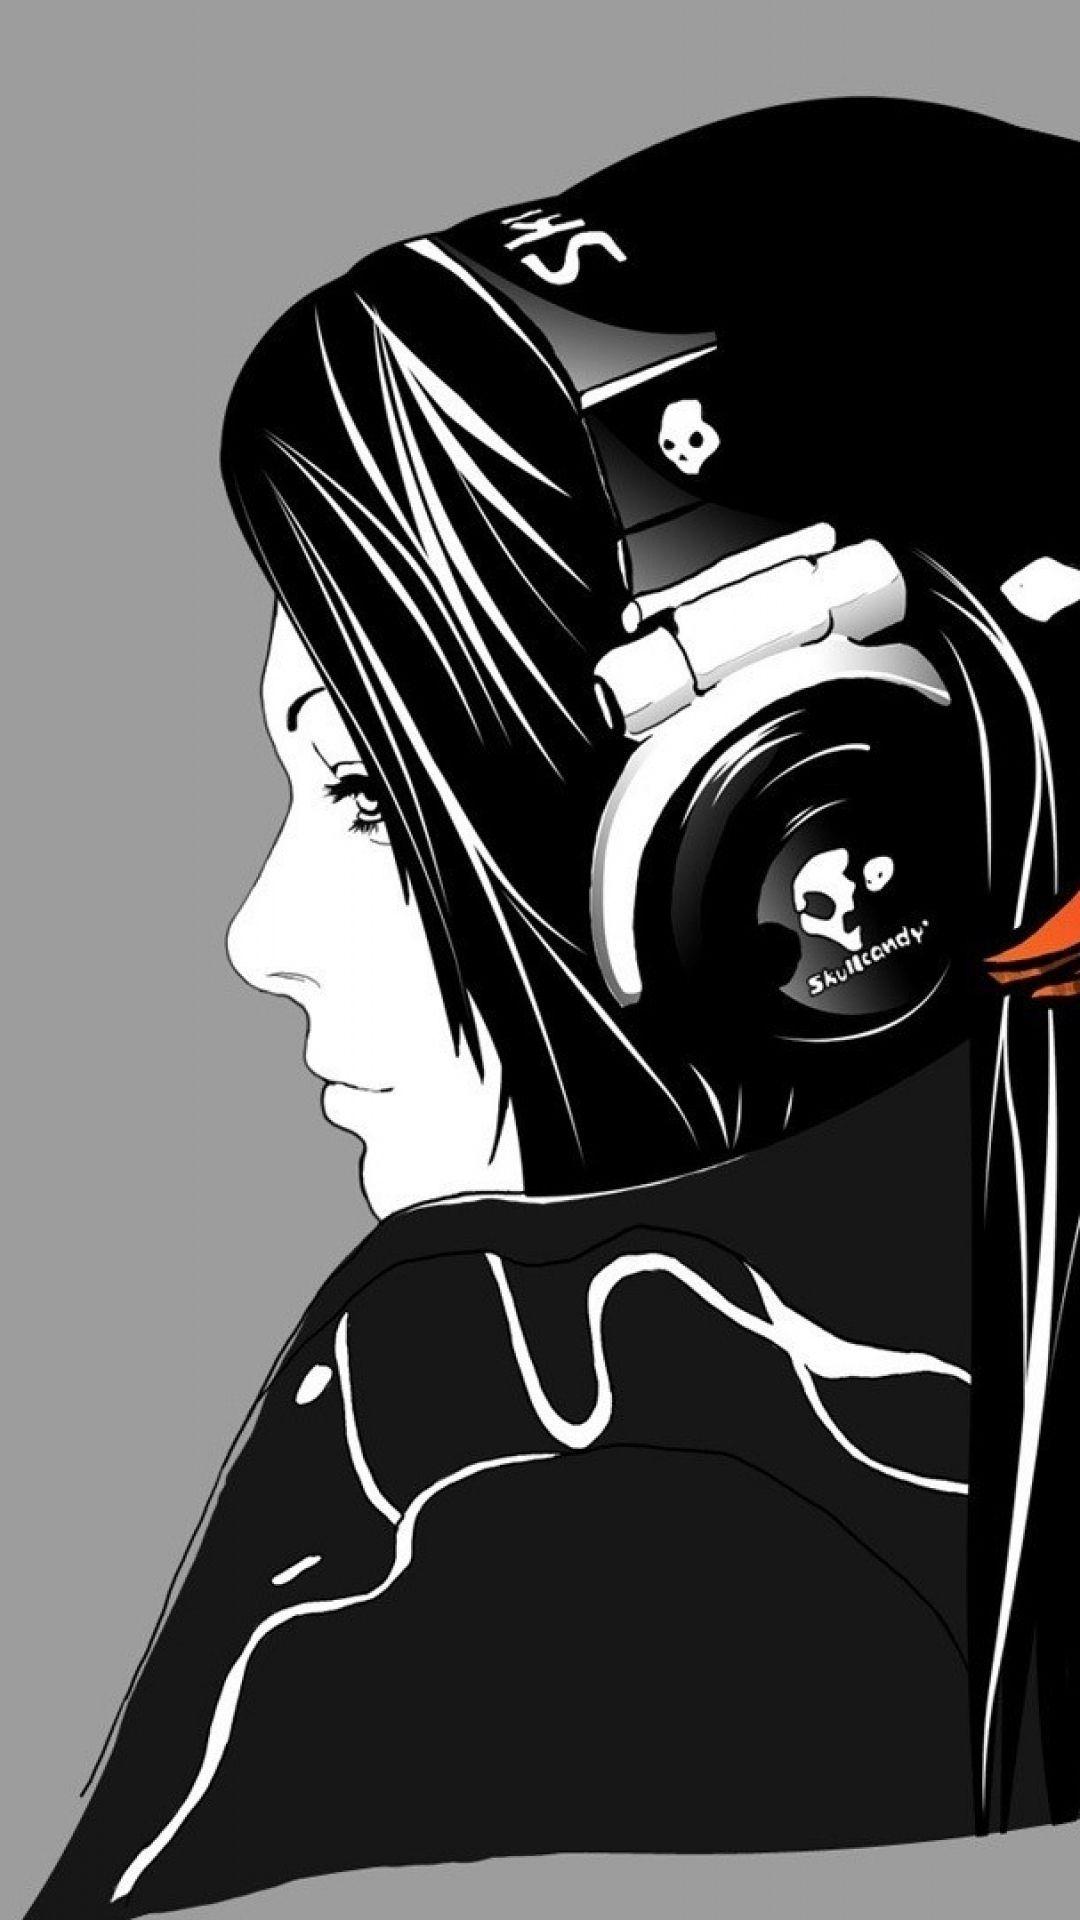 Music iPhone Wallpaper For Music Manias. Skull headphones, Girl